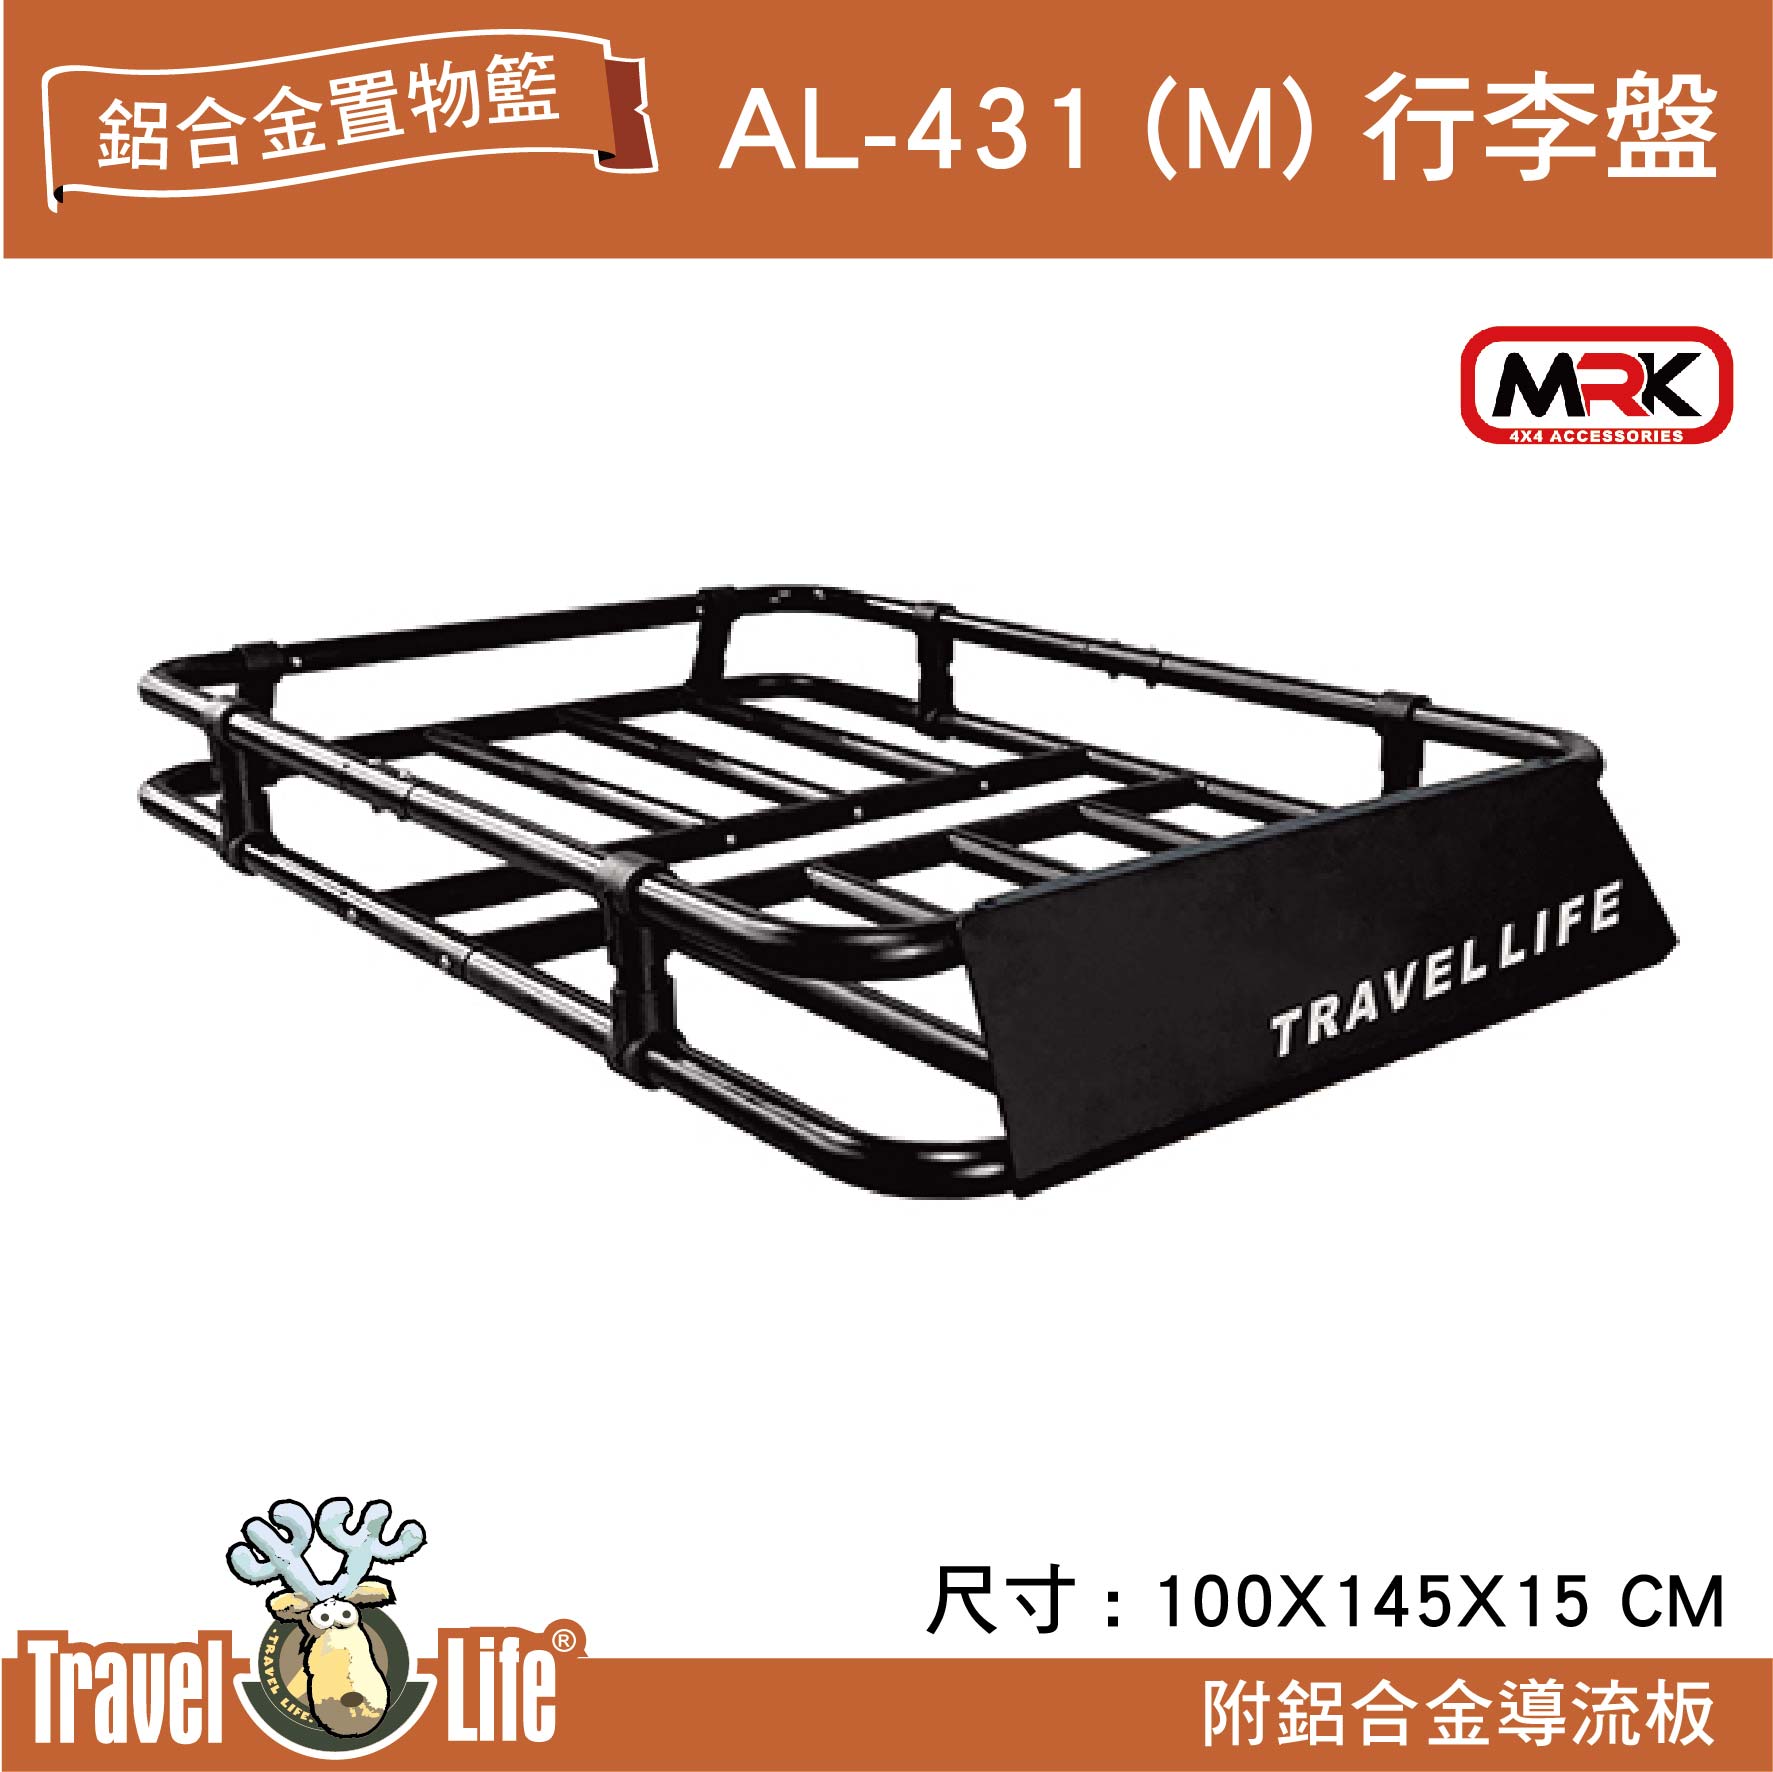 【MRK】Travel Life 快克 AL-431(M) 輕量化鋁合金置物籃 附鋁合金導流板 行李盤 行李架 置物籃